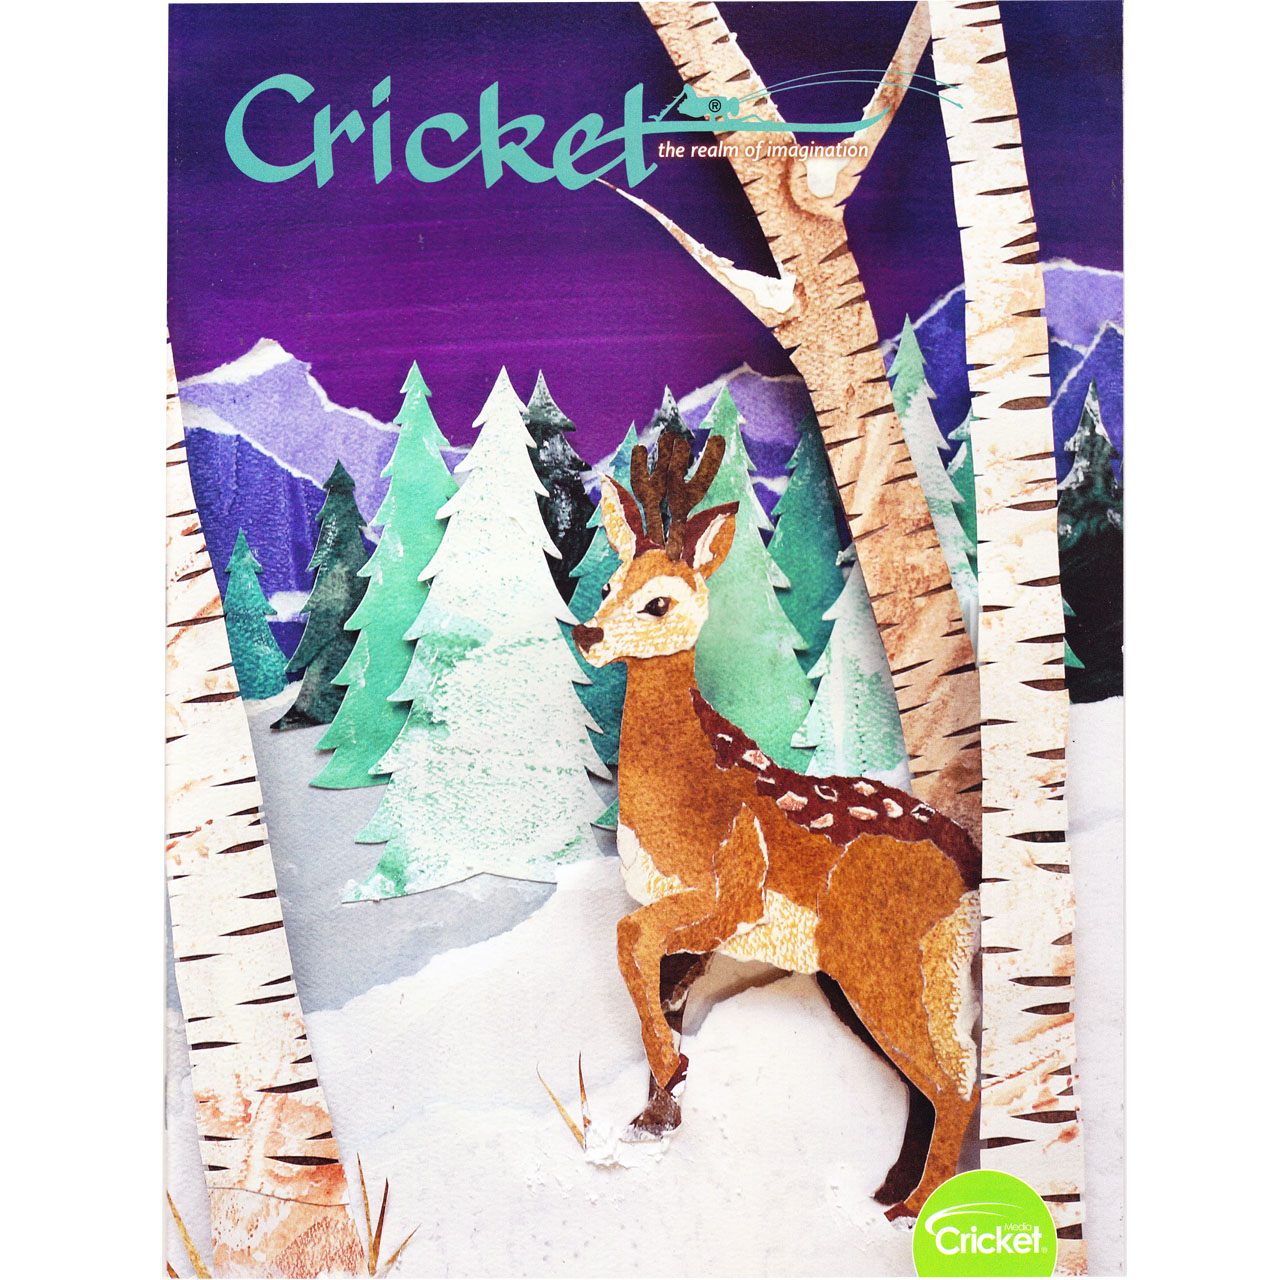 مجله Cricket دسامبر 2019